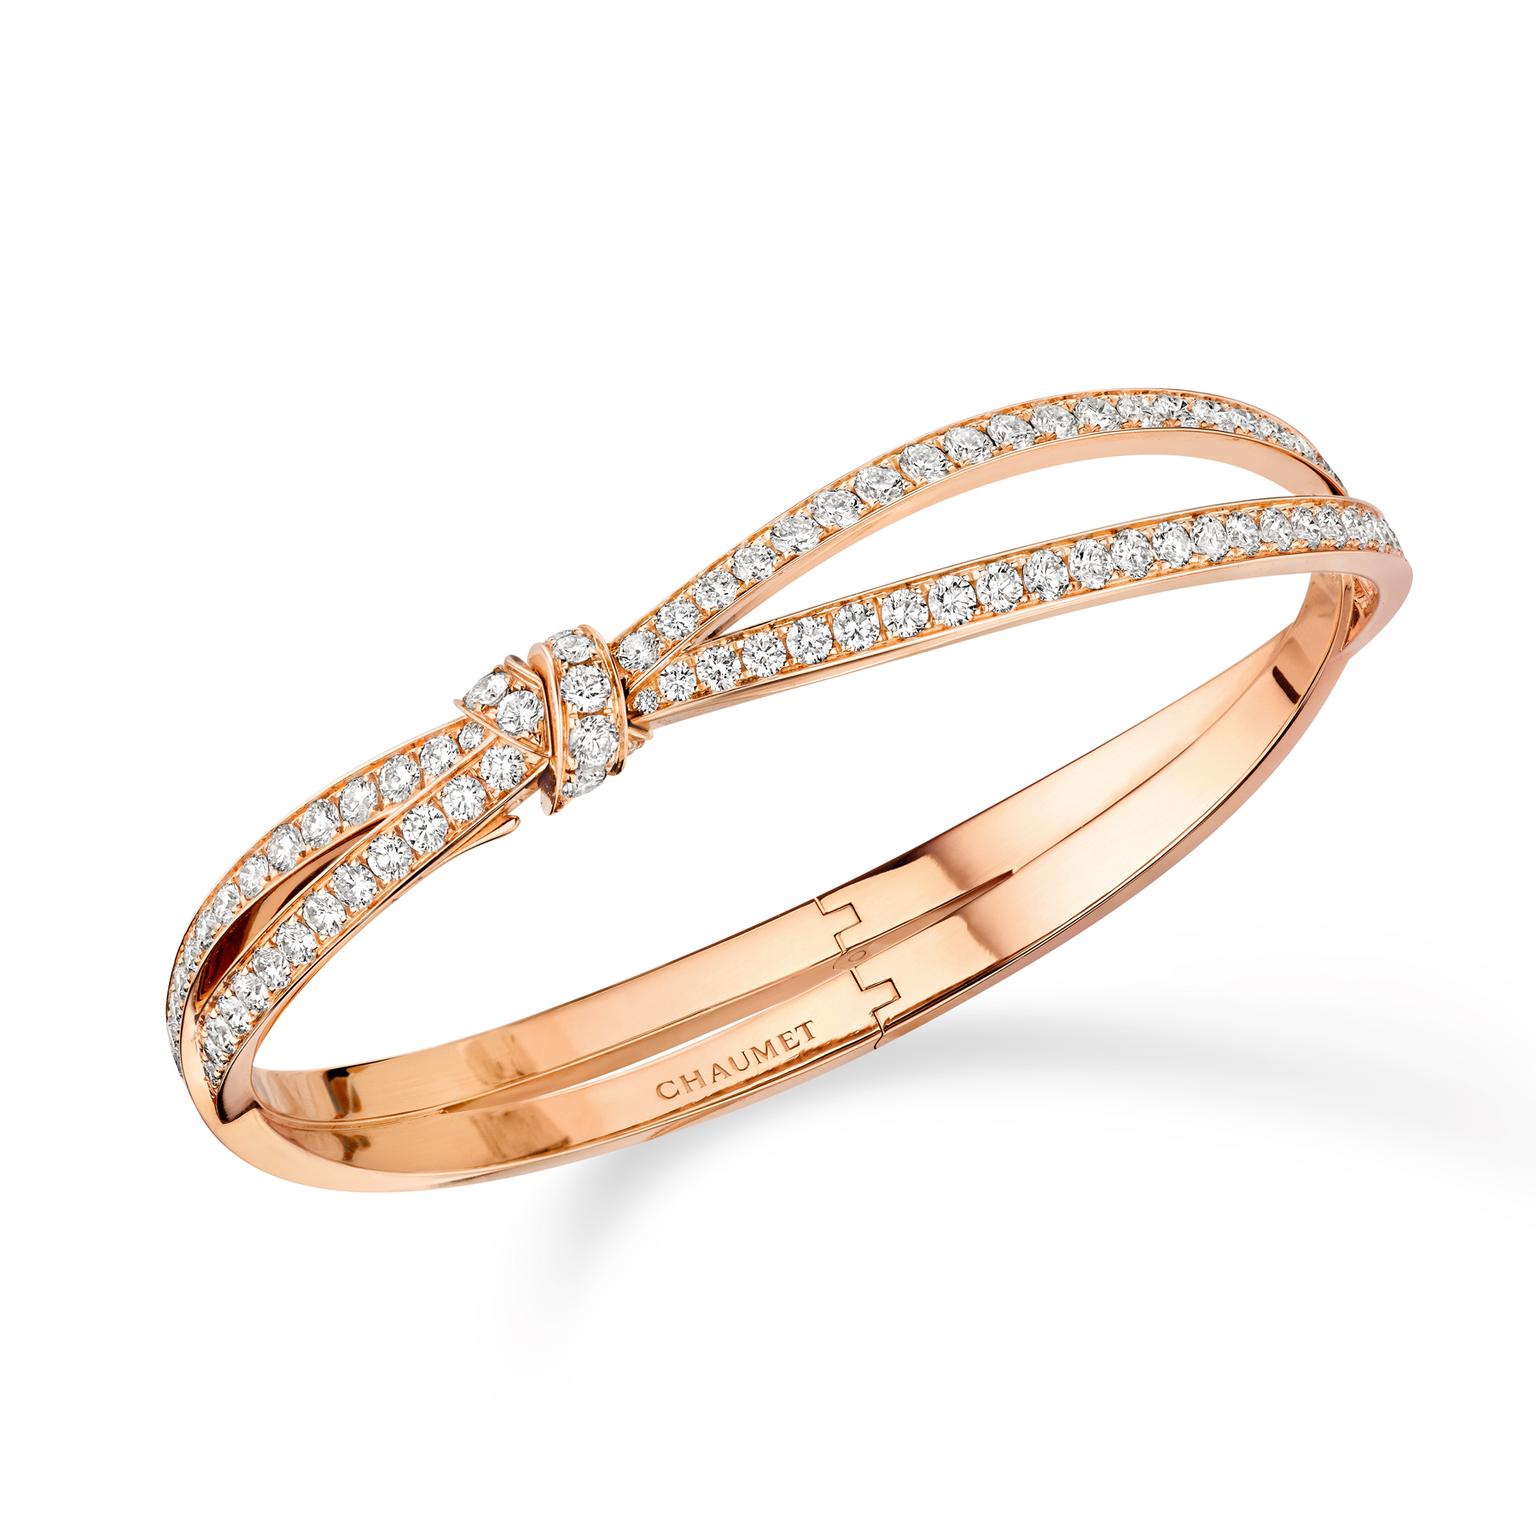 Chaumet Séduction rose gold bracelet with diamonds